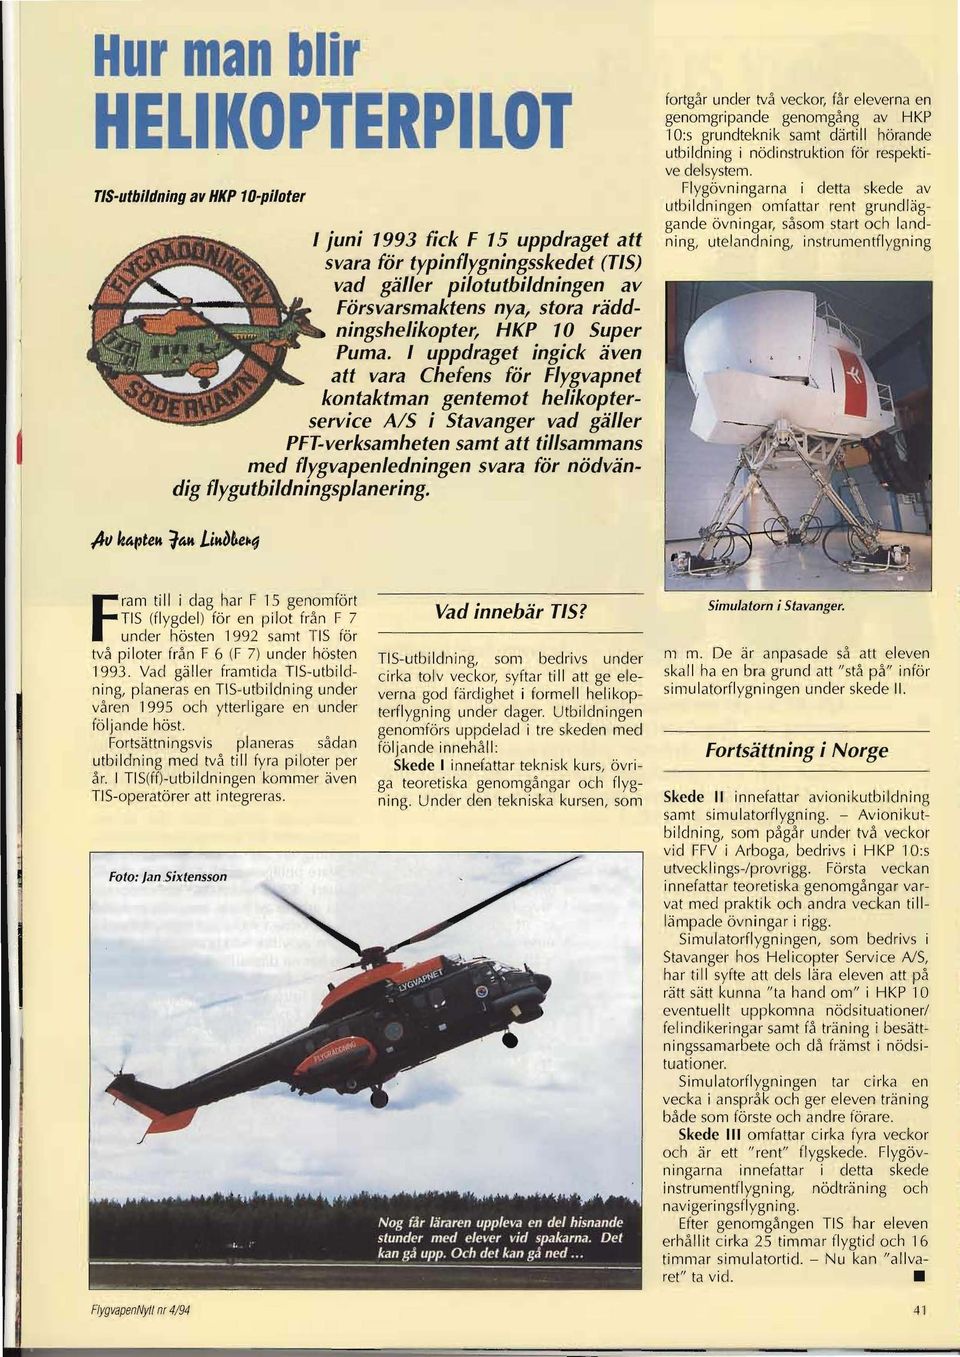 I uppdraget ingick även att vara Chefens för Flygvapnet kontaktman gentemot helikopterservice A/S i Stavanger vad gäller PFT-verksamheten samt att tillsammans med flygvapen ledningen svara för